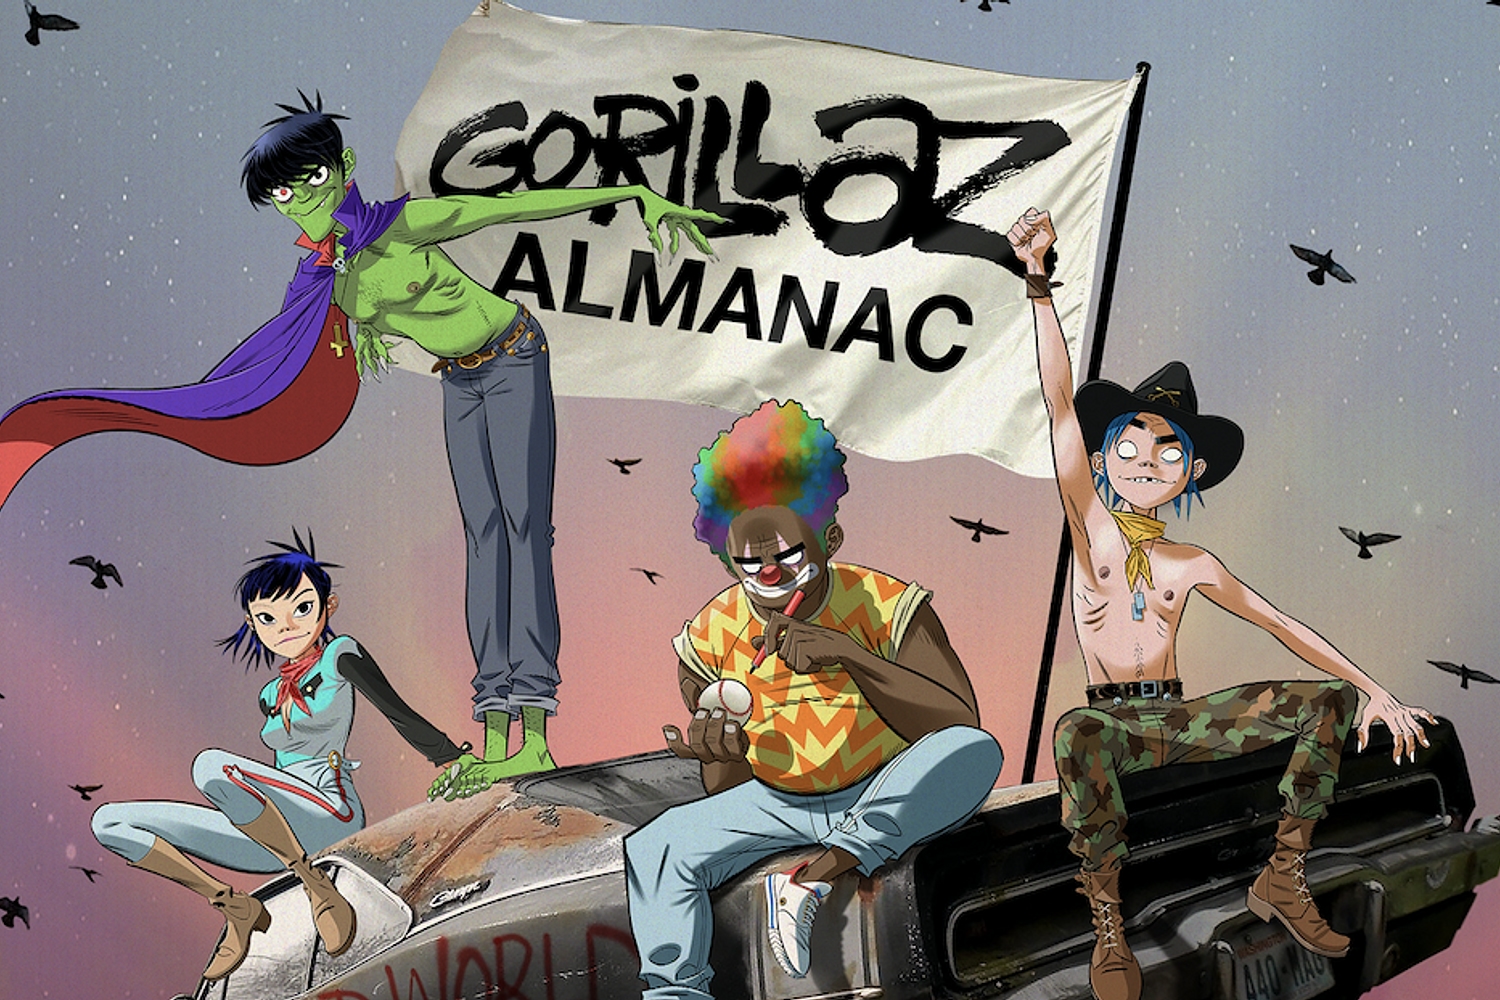 Gorillaz announce ALMANAC